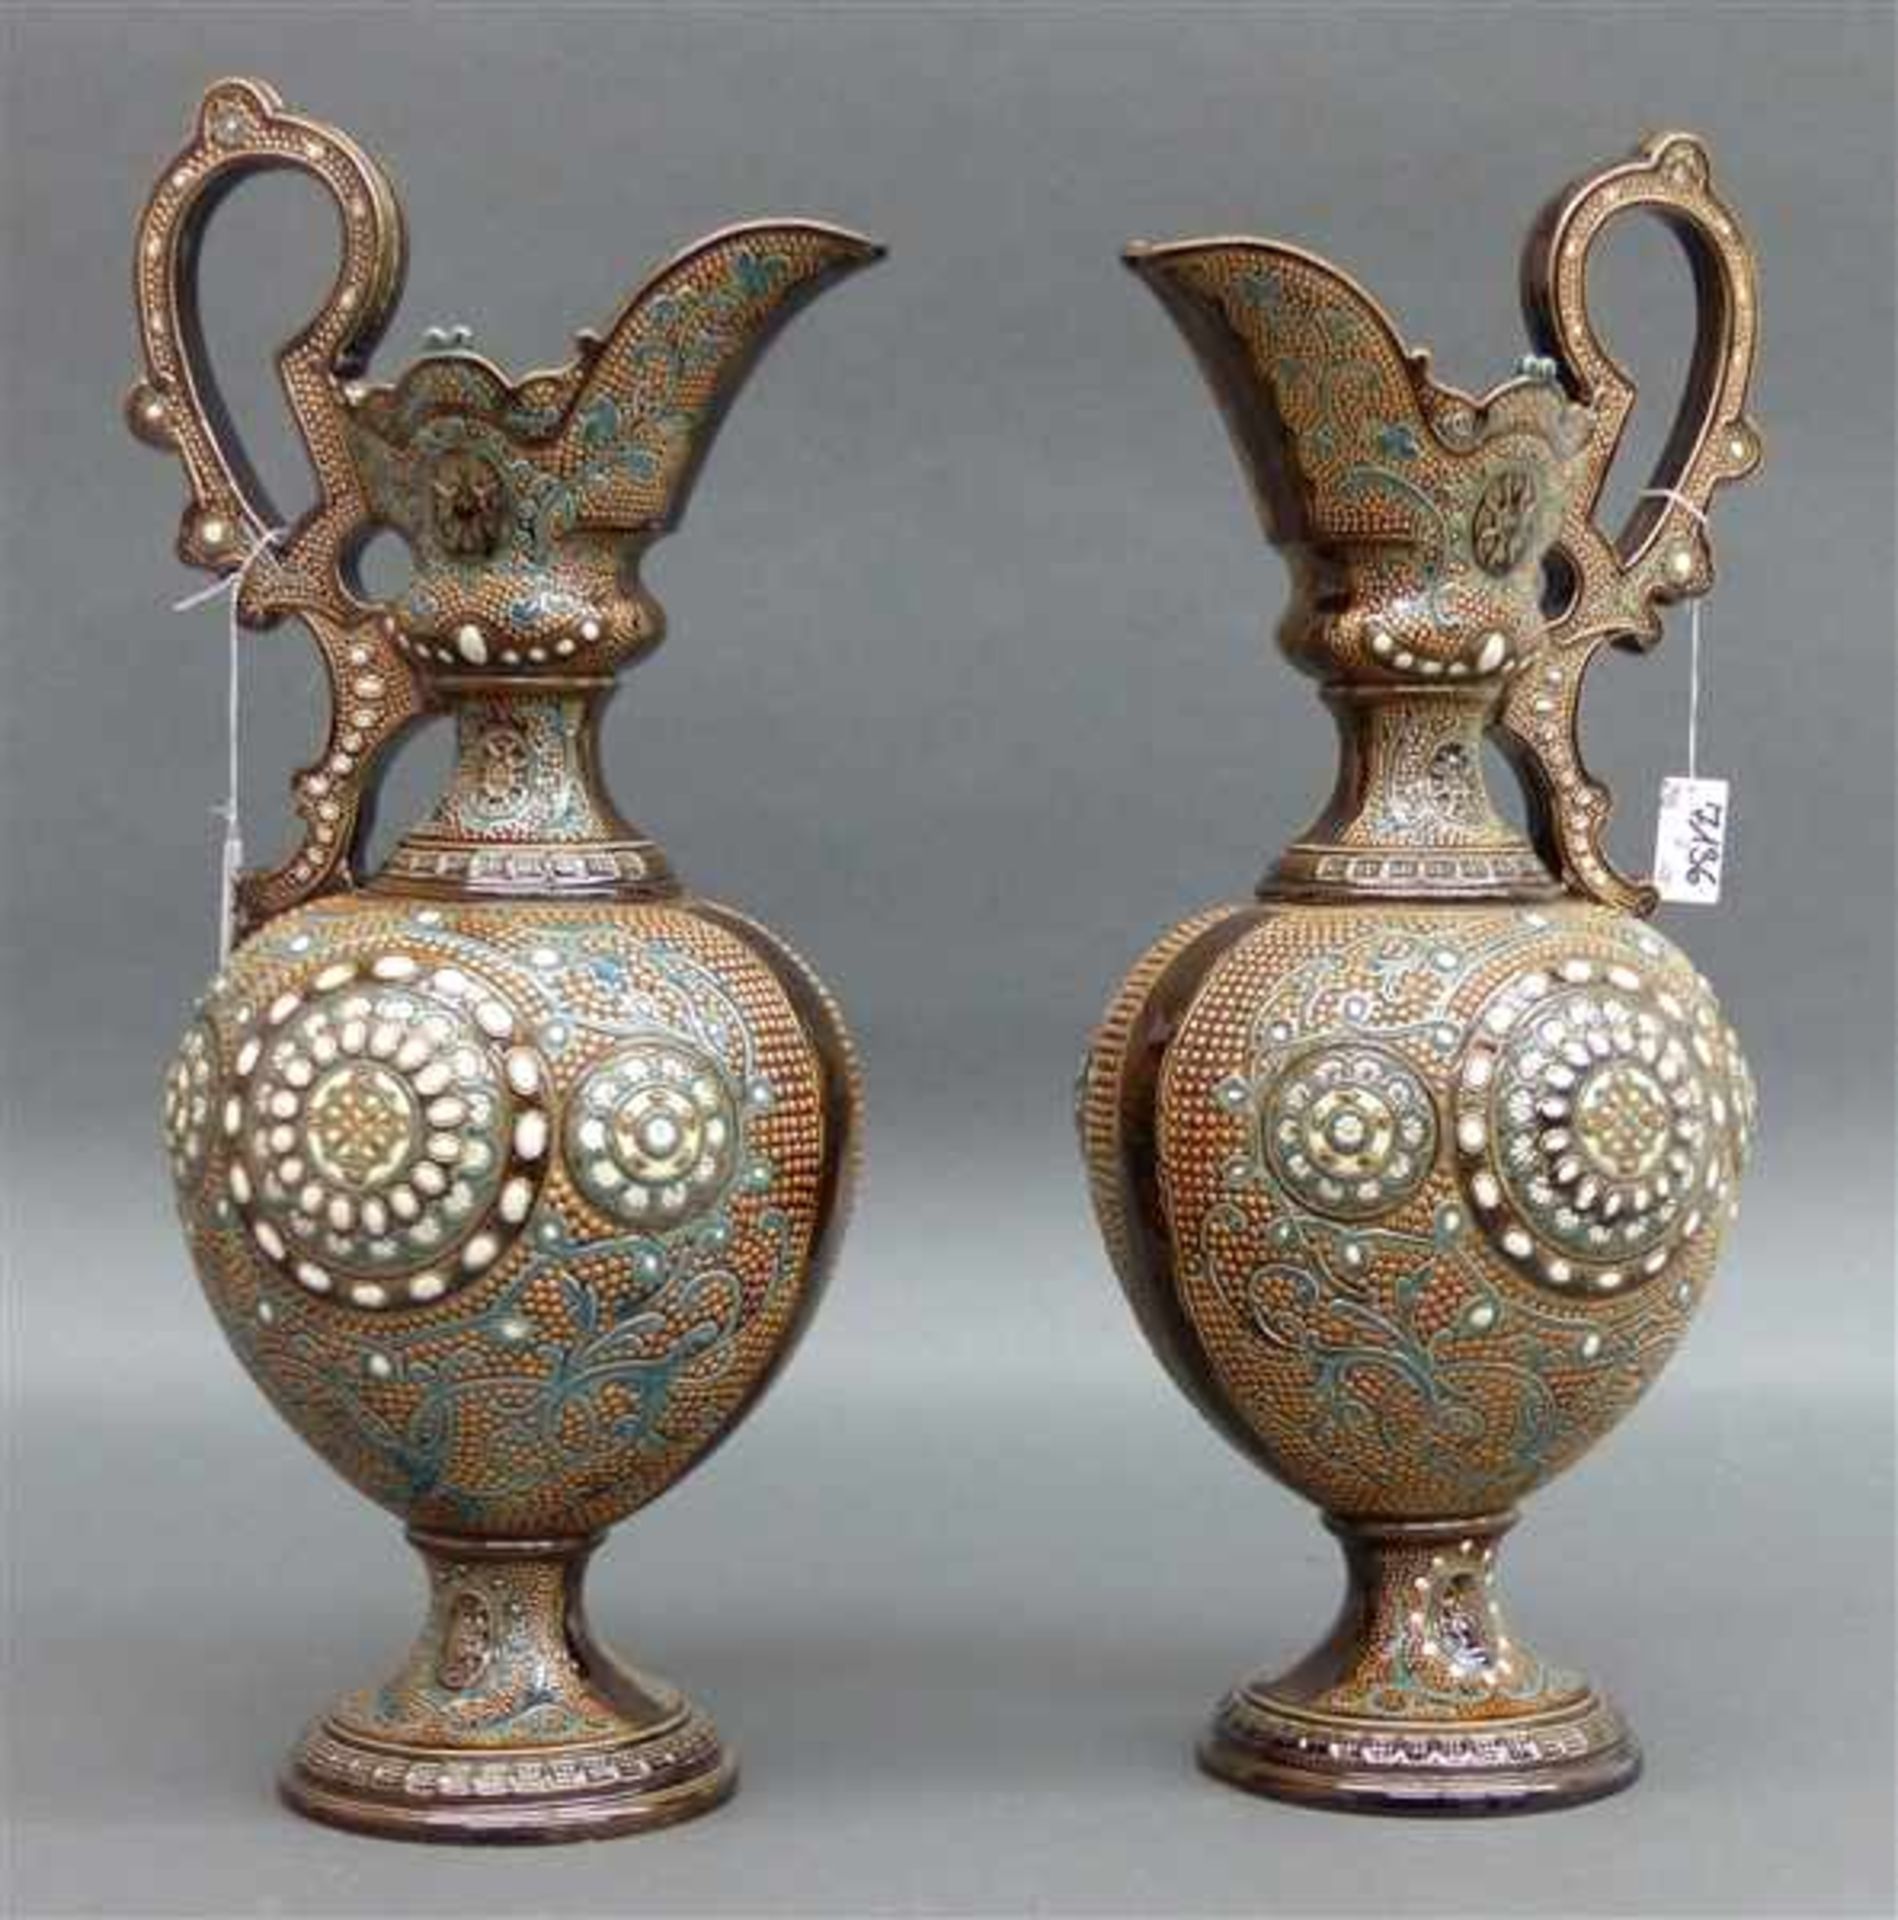 Paar Zierkannen Keramik, braune Glasur, reicher Dekor, Bodennummerierung, um 1950, h 41 cm,